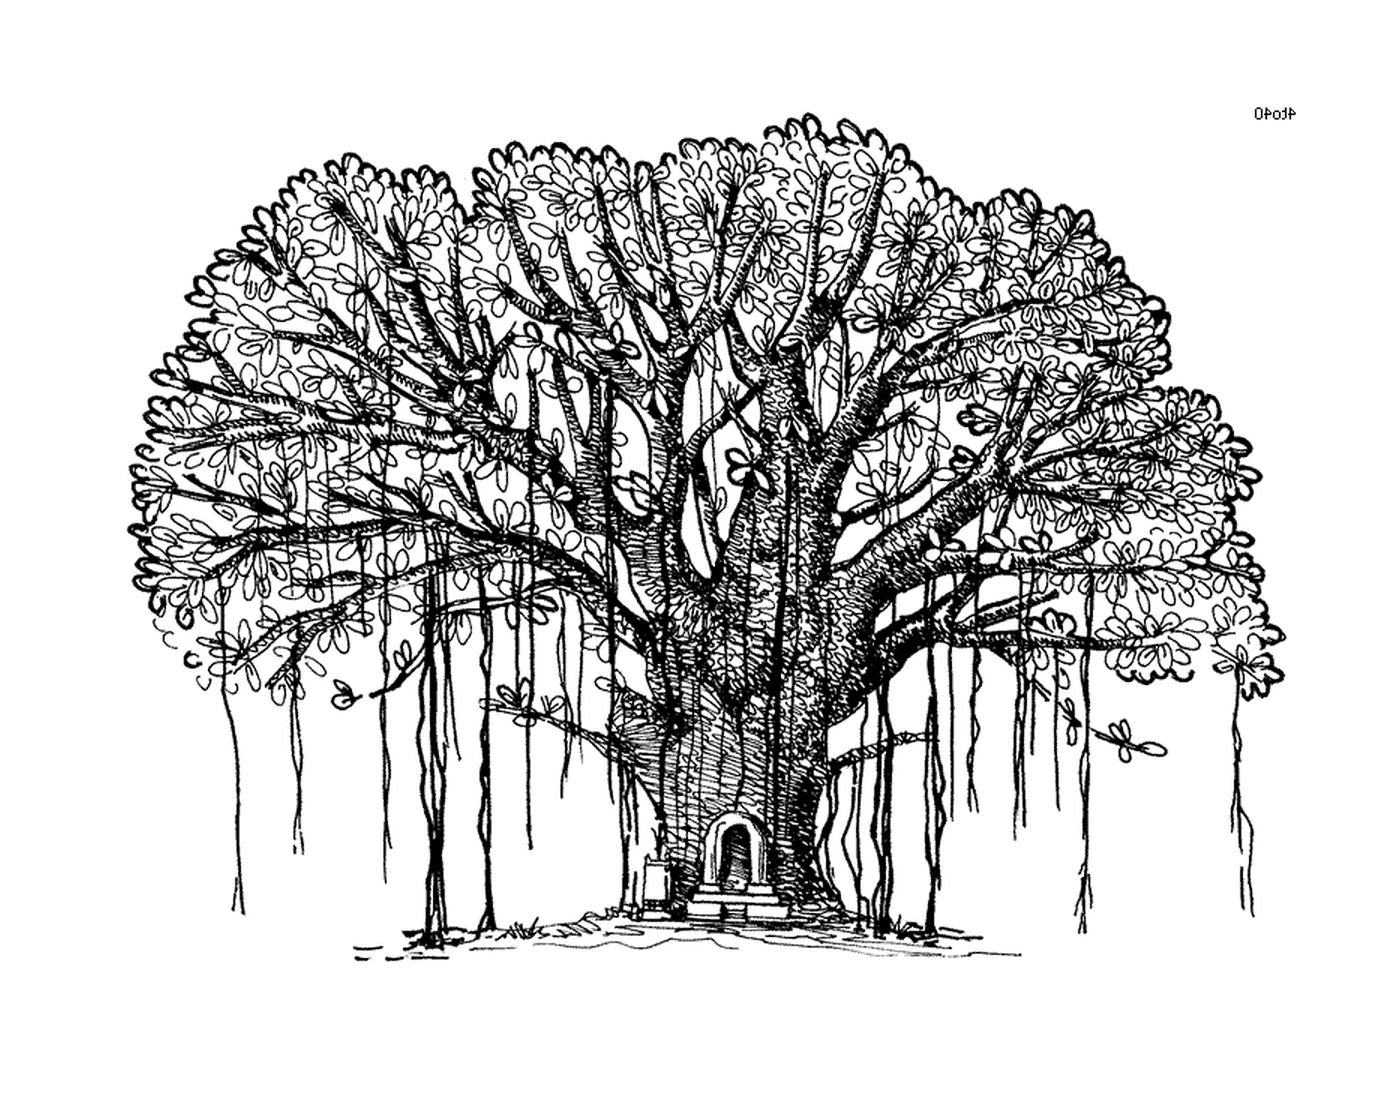   Une encre, un grand arbre avec un banc au milieu 